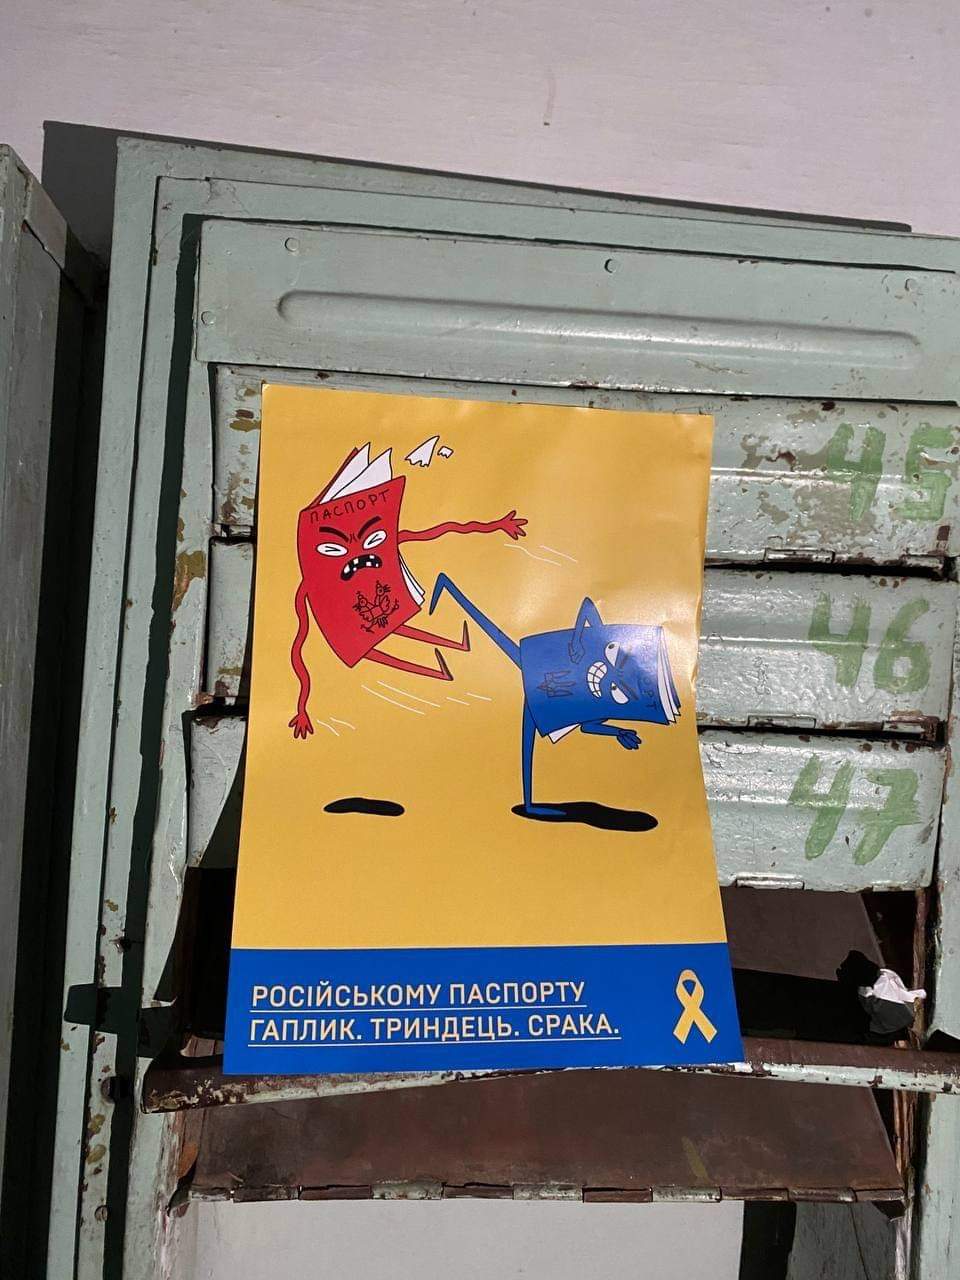 “Російському паспорту гаплик”: активісти «Жовтої стрічки» розклеїли нові листівки в тимчасово окупованому Енергодарі (ФОТО)